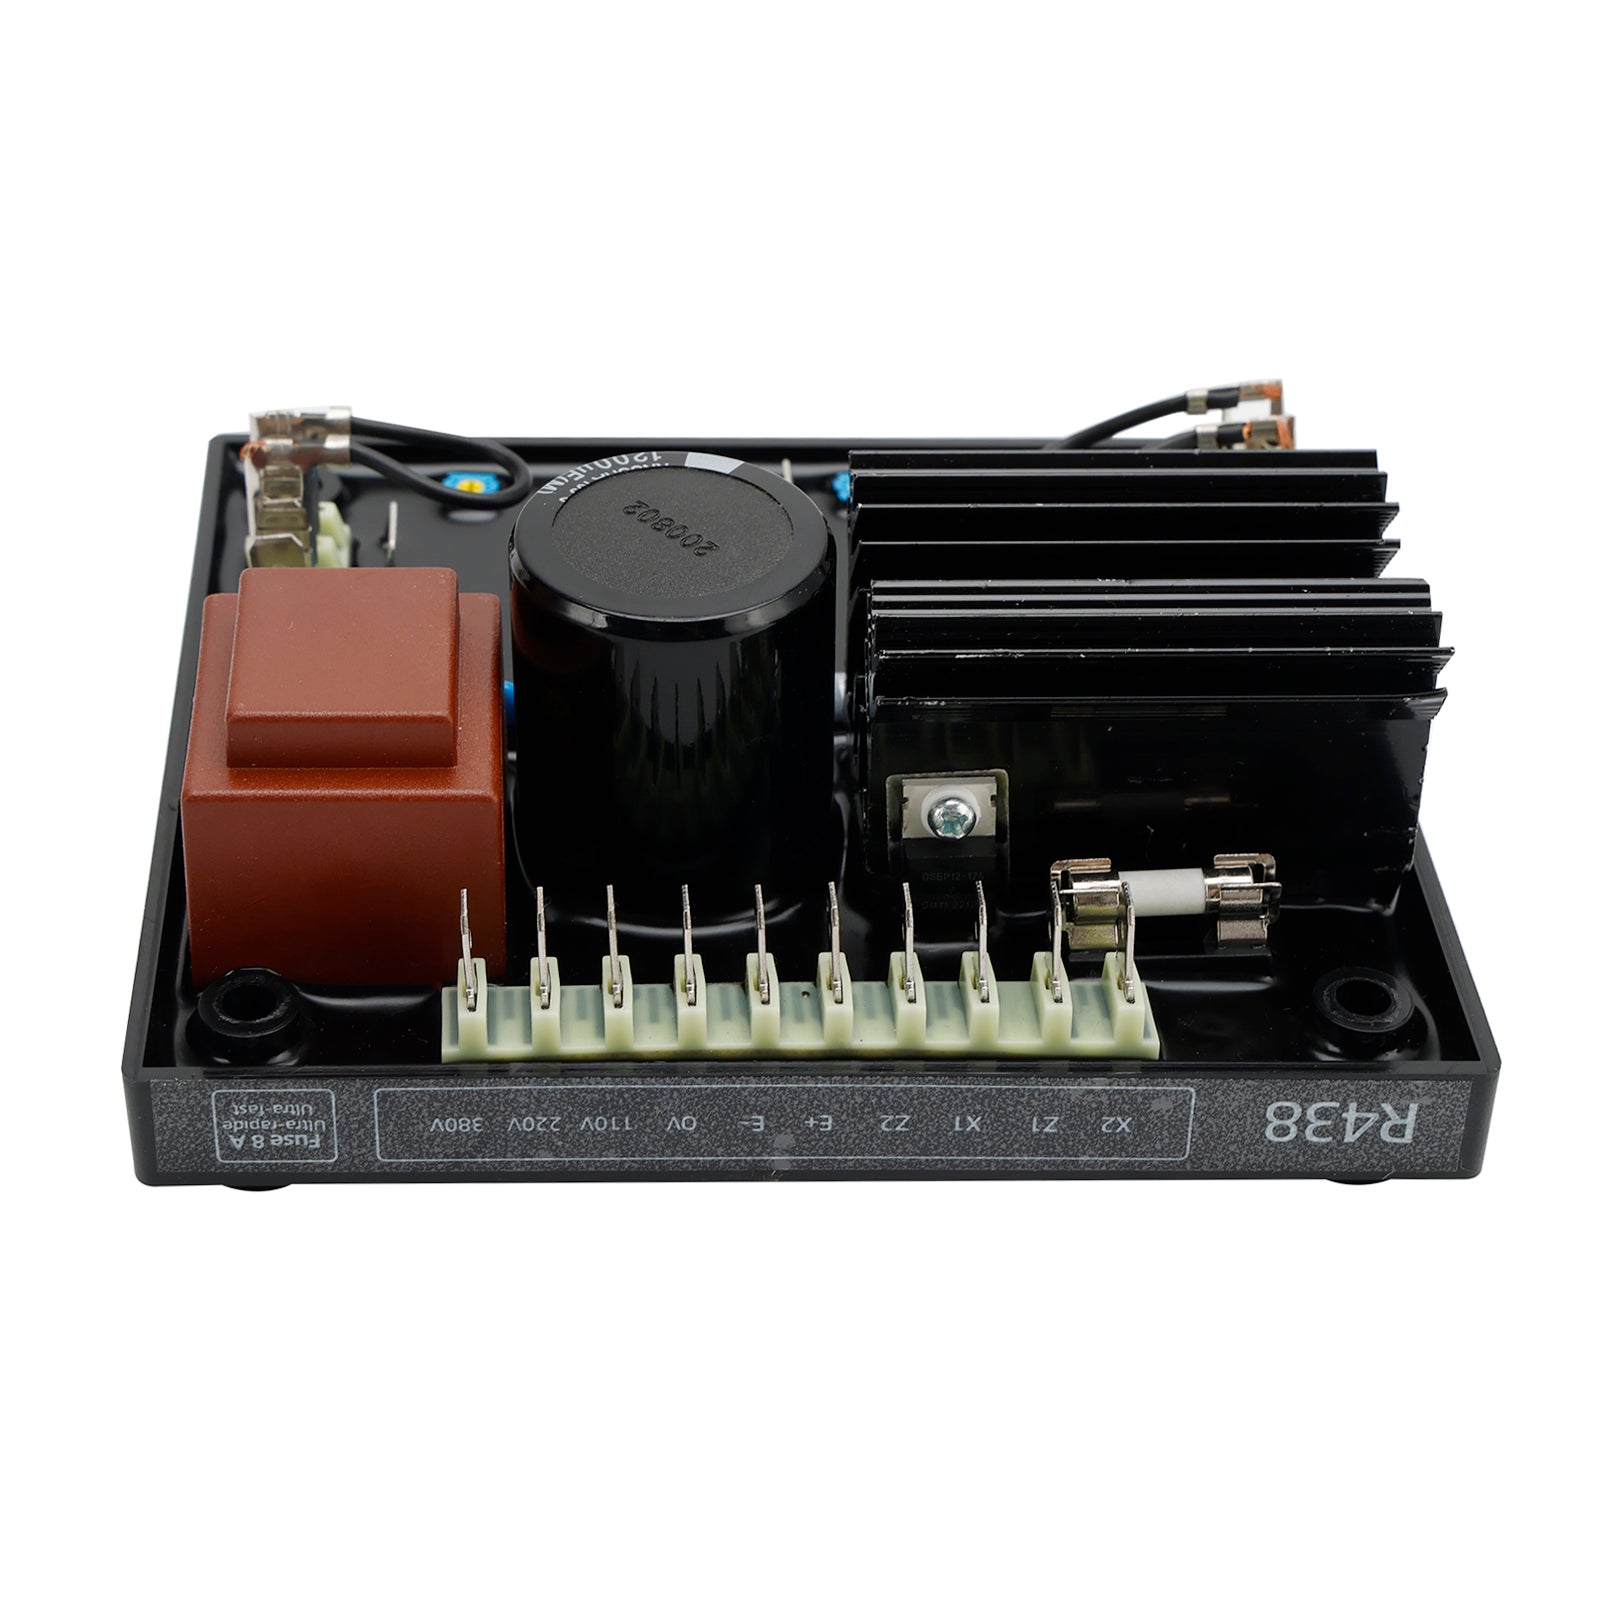 Regolatore di tensione automatico AVR R438 compatibile con il generatore Leroy Somer